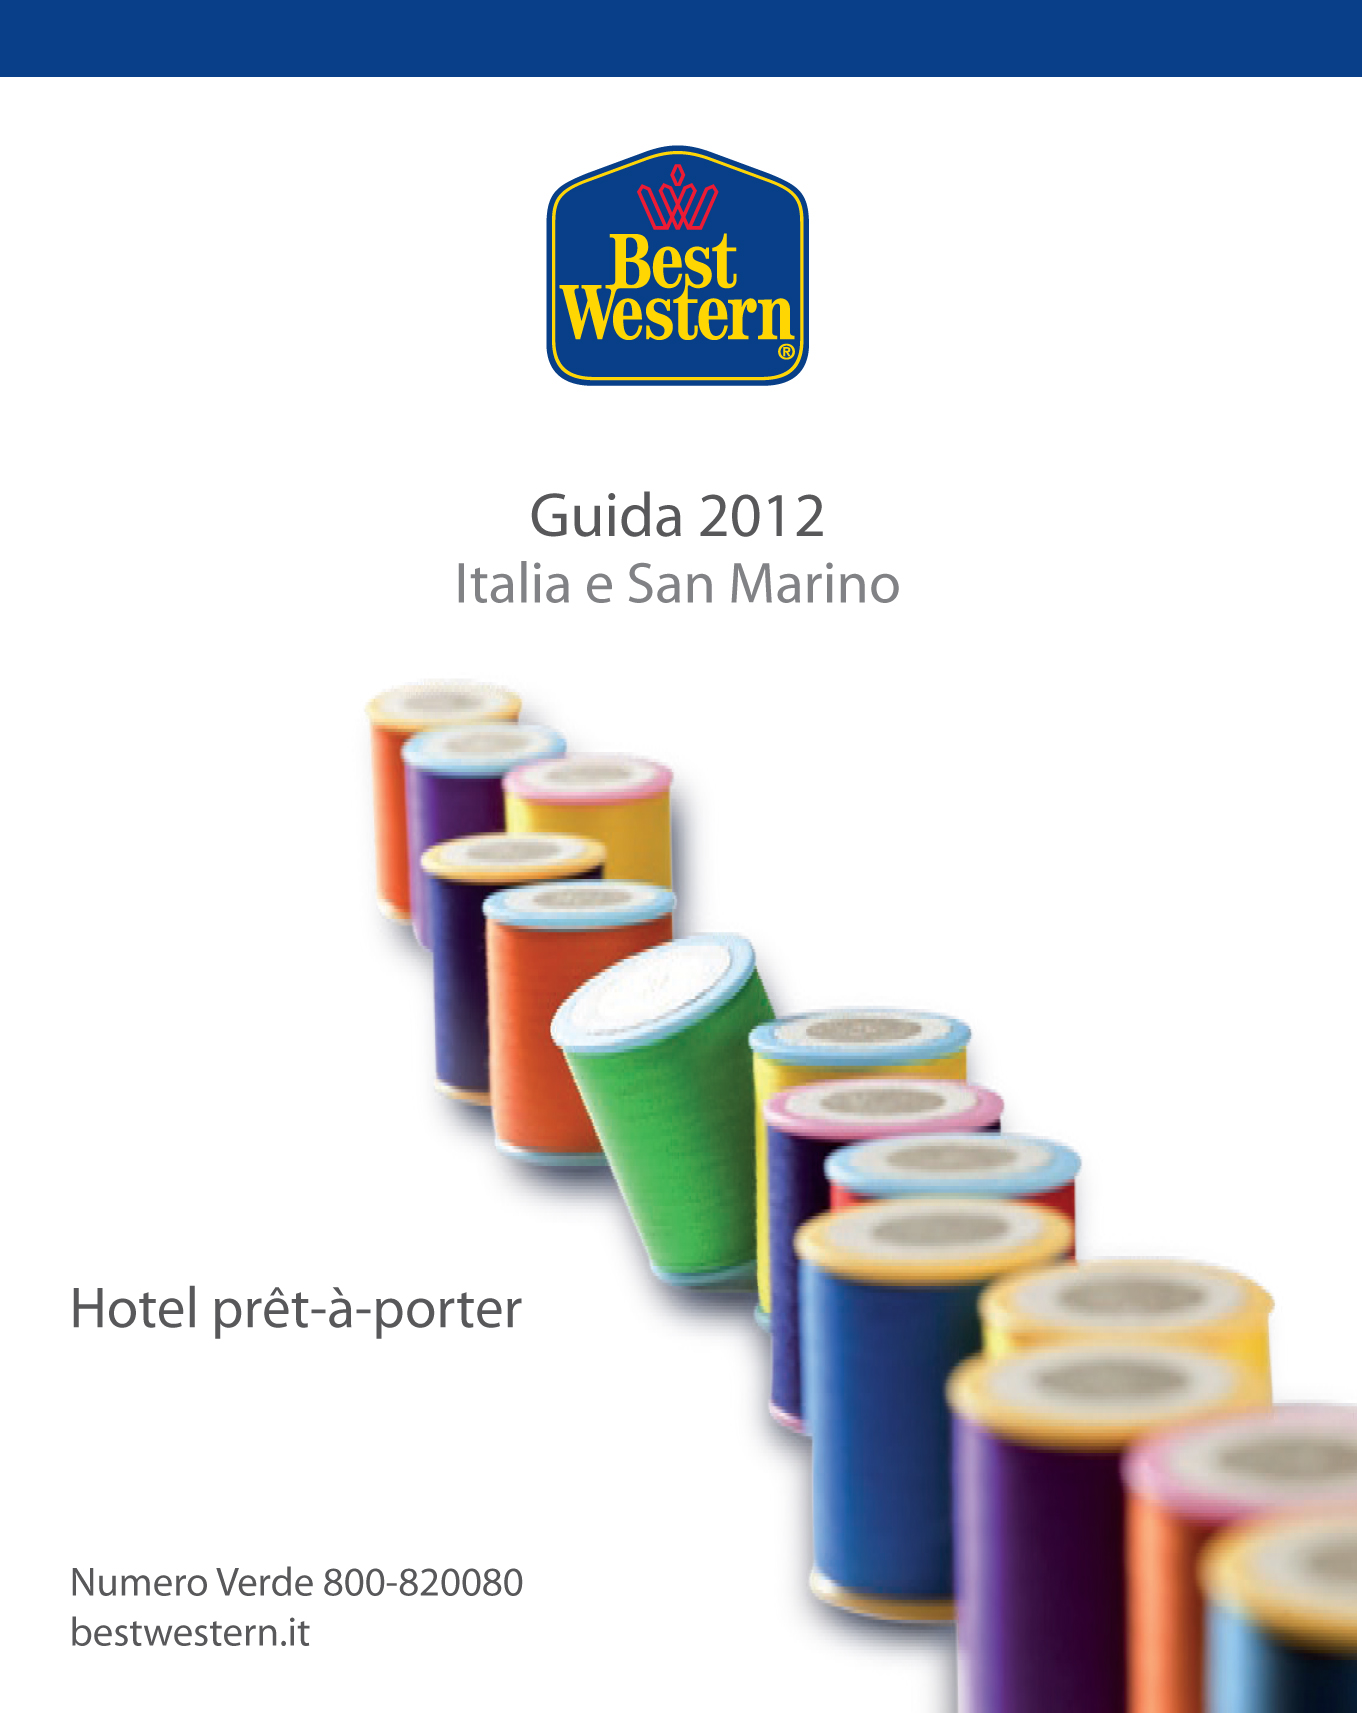 Best Western Italia: è in distribuzione la Guida “Hotel 2012 Italia e San Marino”